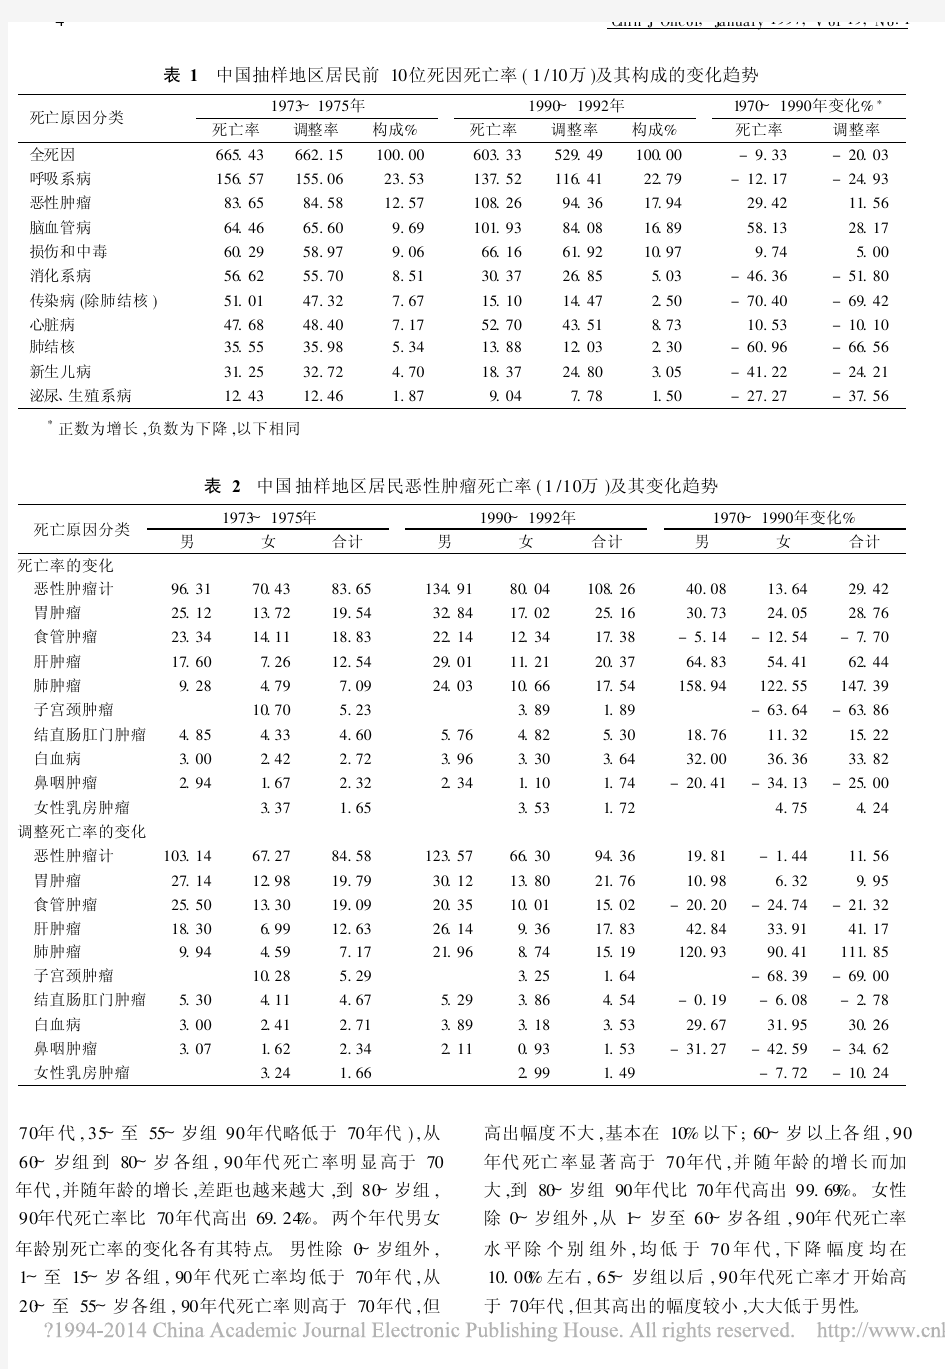 中国恶性肿瘤死亡率20年变化趋势和近期预测分析